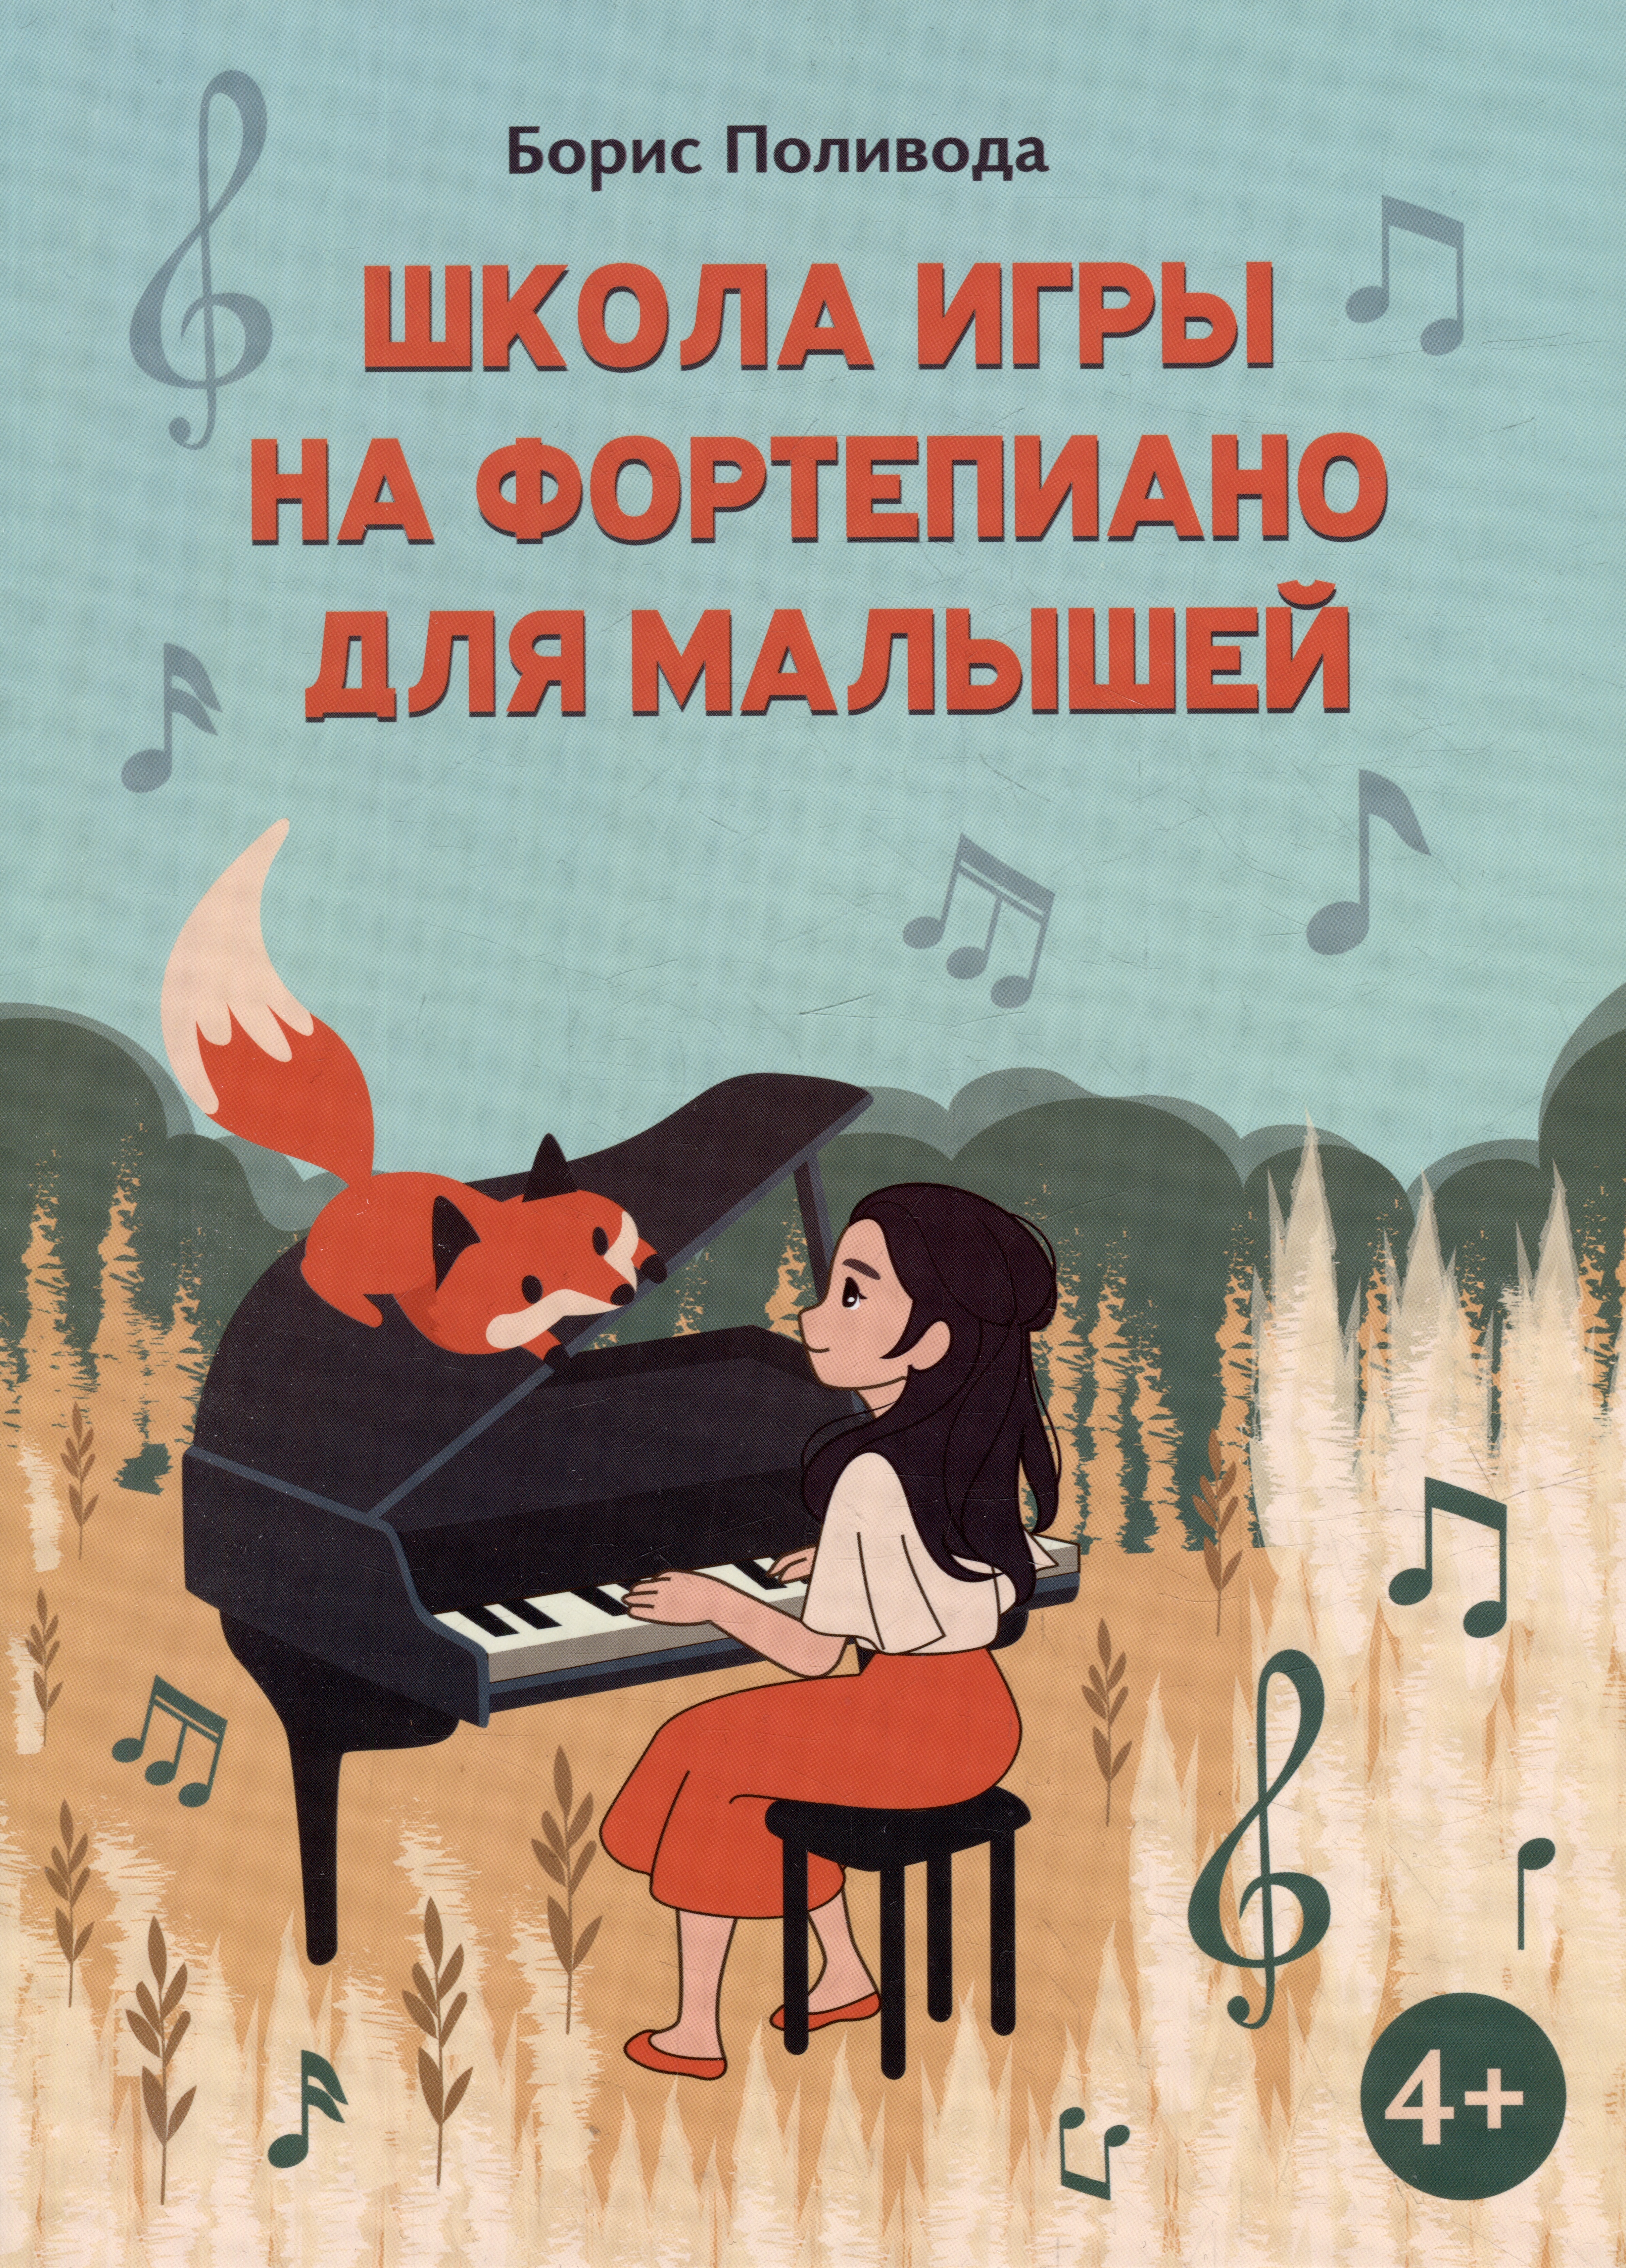 Поливода Борис Андреевич Школа игры на фортепиано для малышей берг белла школа игры на фортепиано для детей